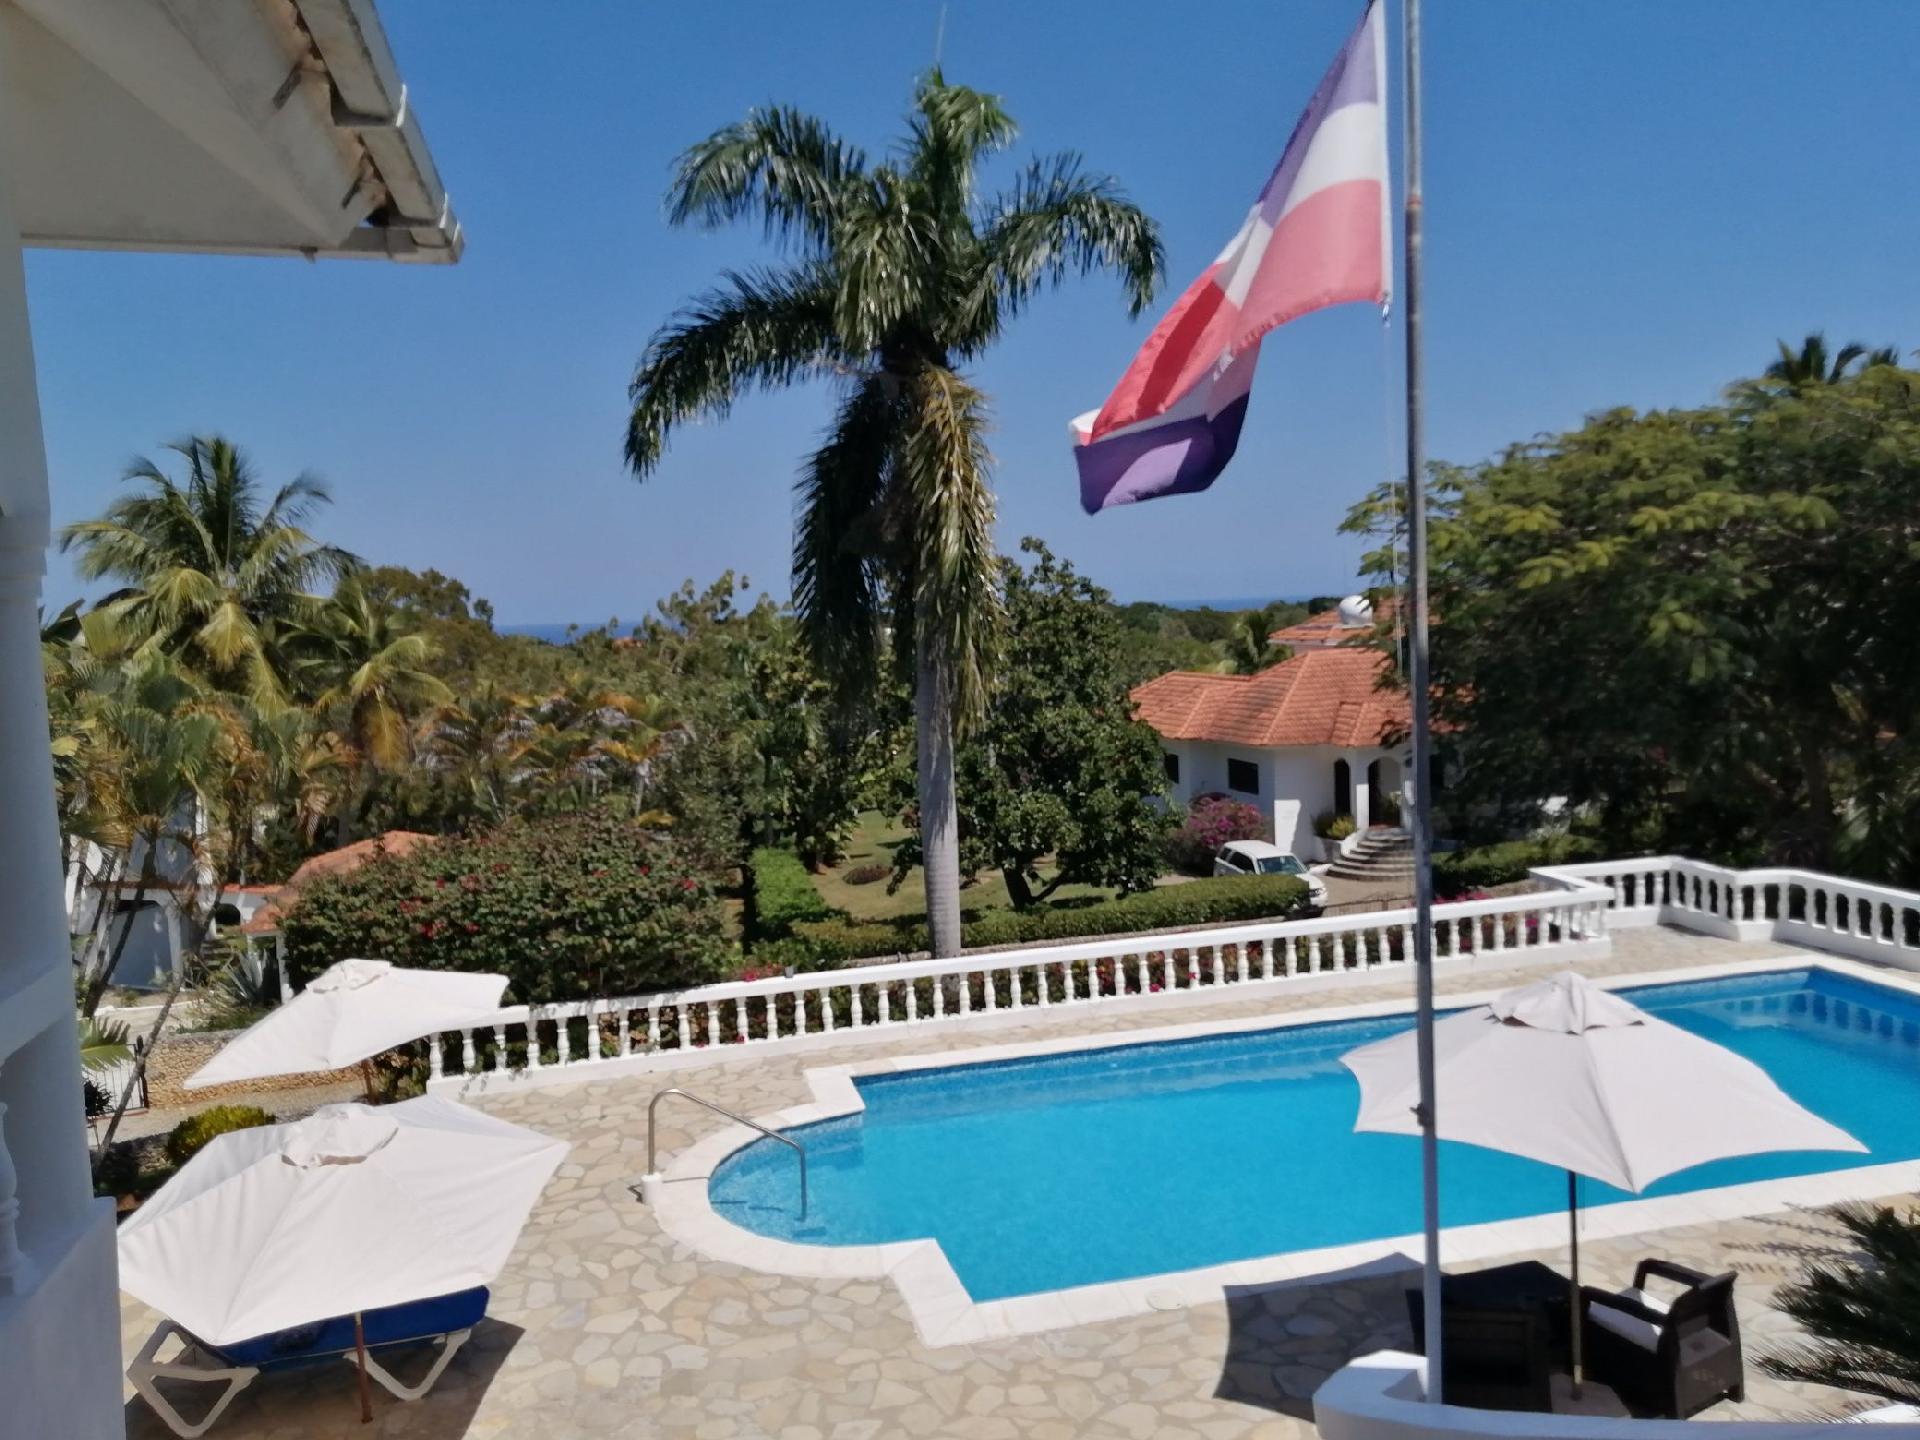 Ferienhaus mit Privatpool für 5 Personen  + 1 Ferienhaus  Dominikanische Republik